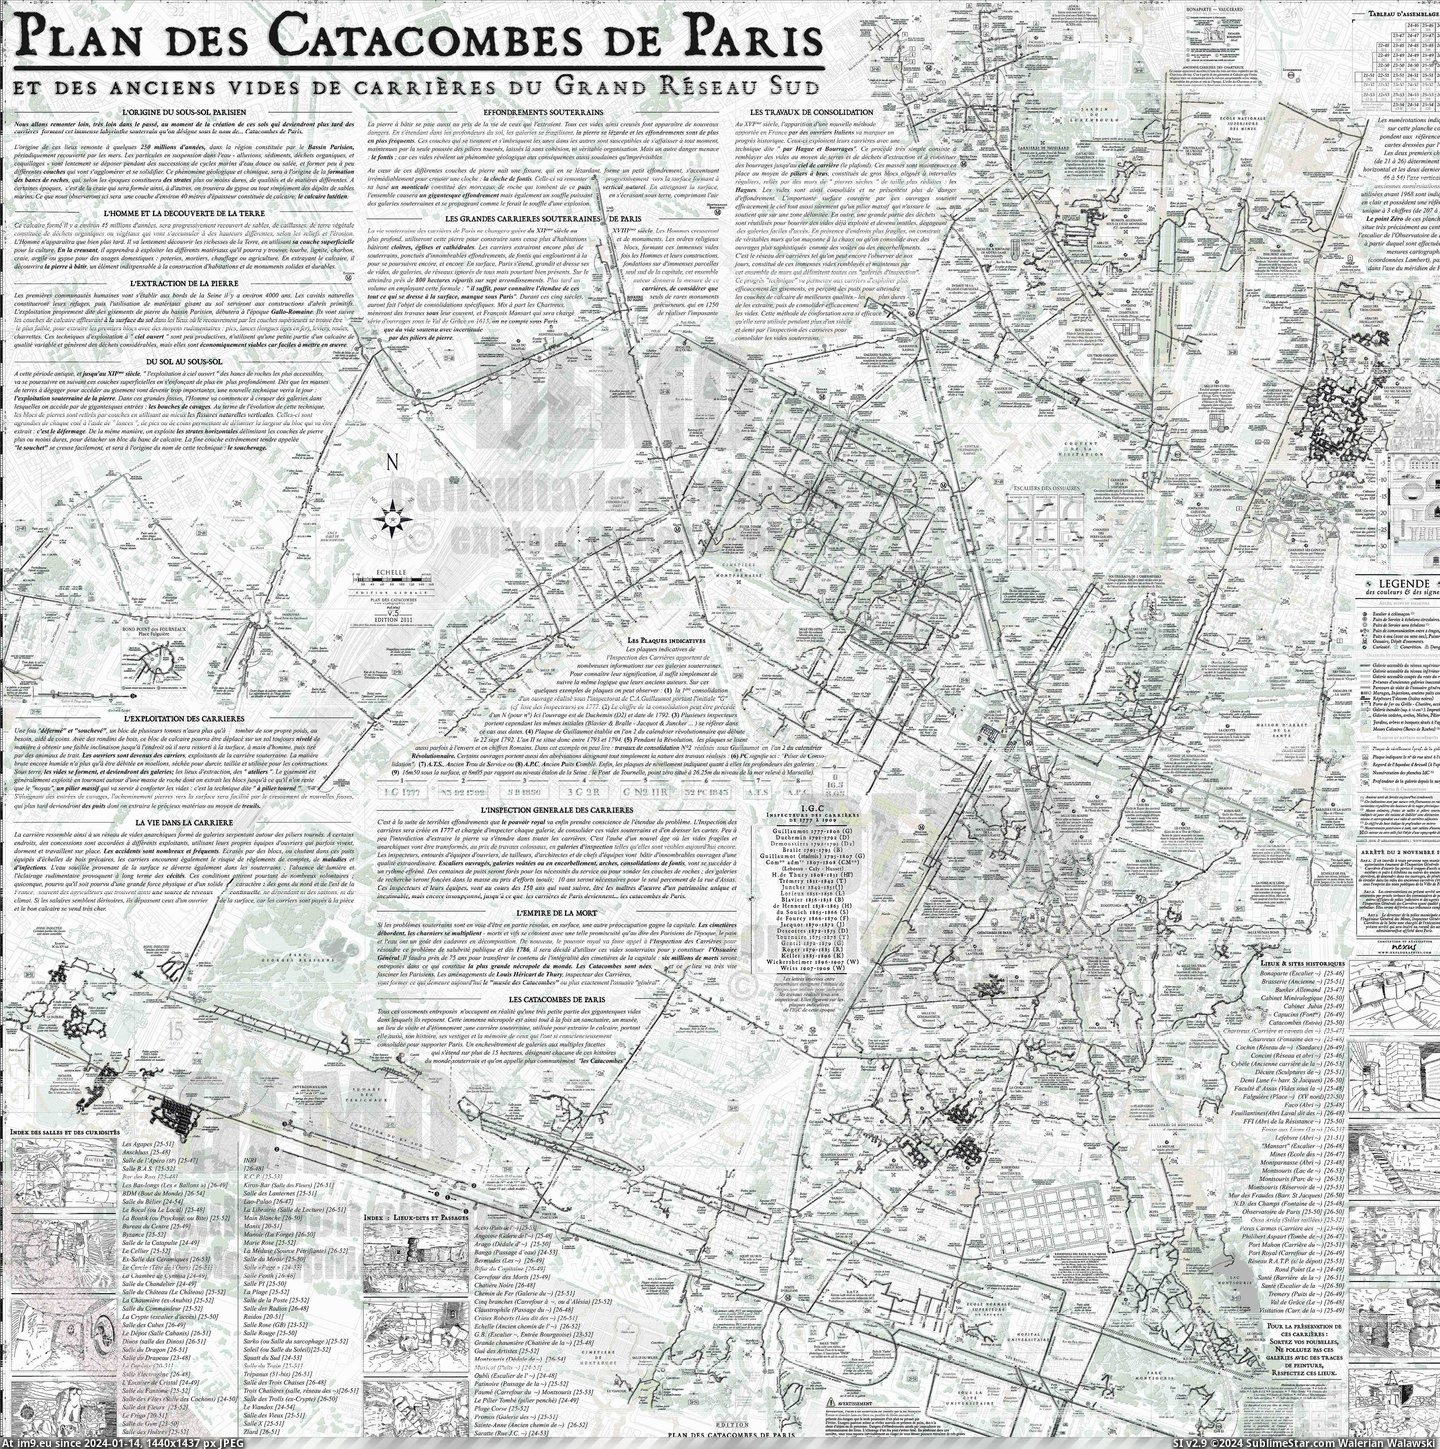 #Paris  #Catacombs [Mapporn] Catacombs of Paris [5888x5888] Pic. (Bild von album My r/MAPS favs))